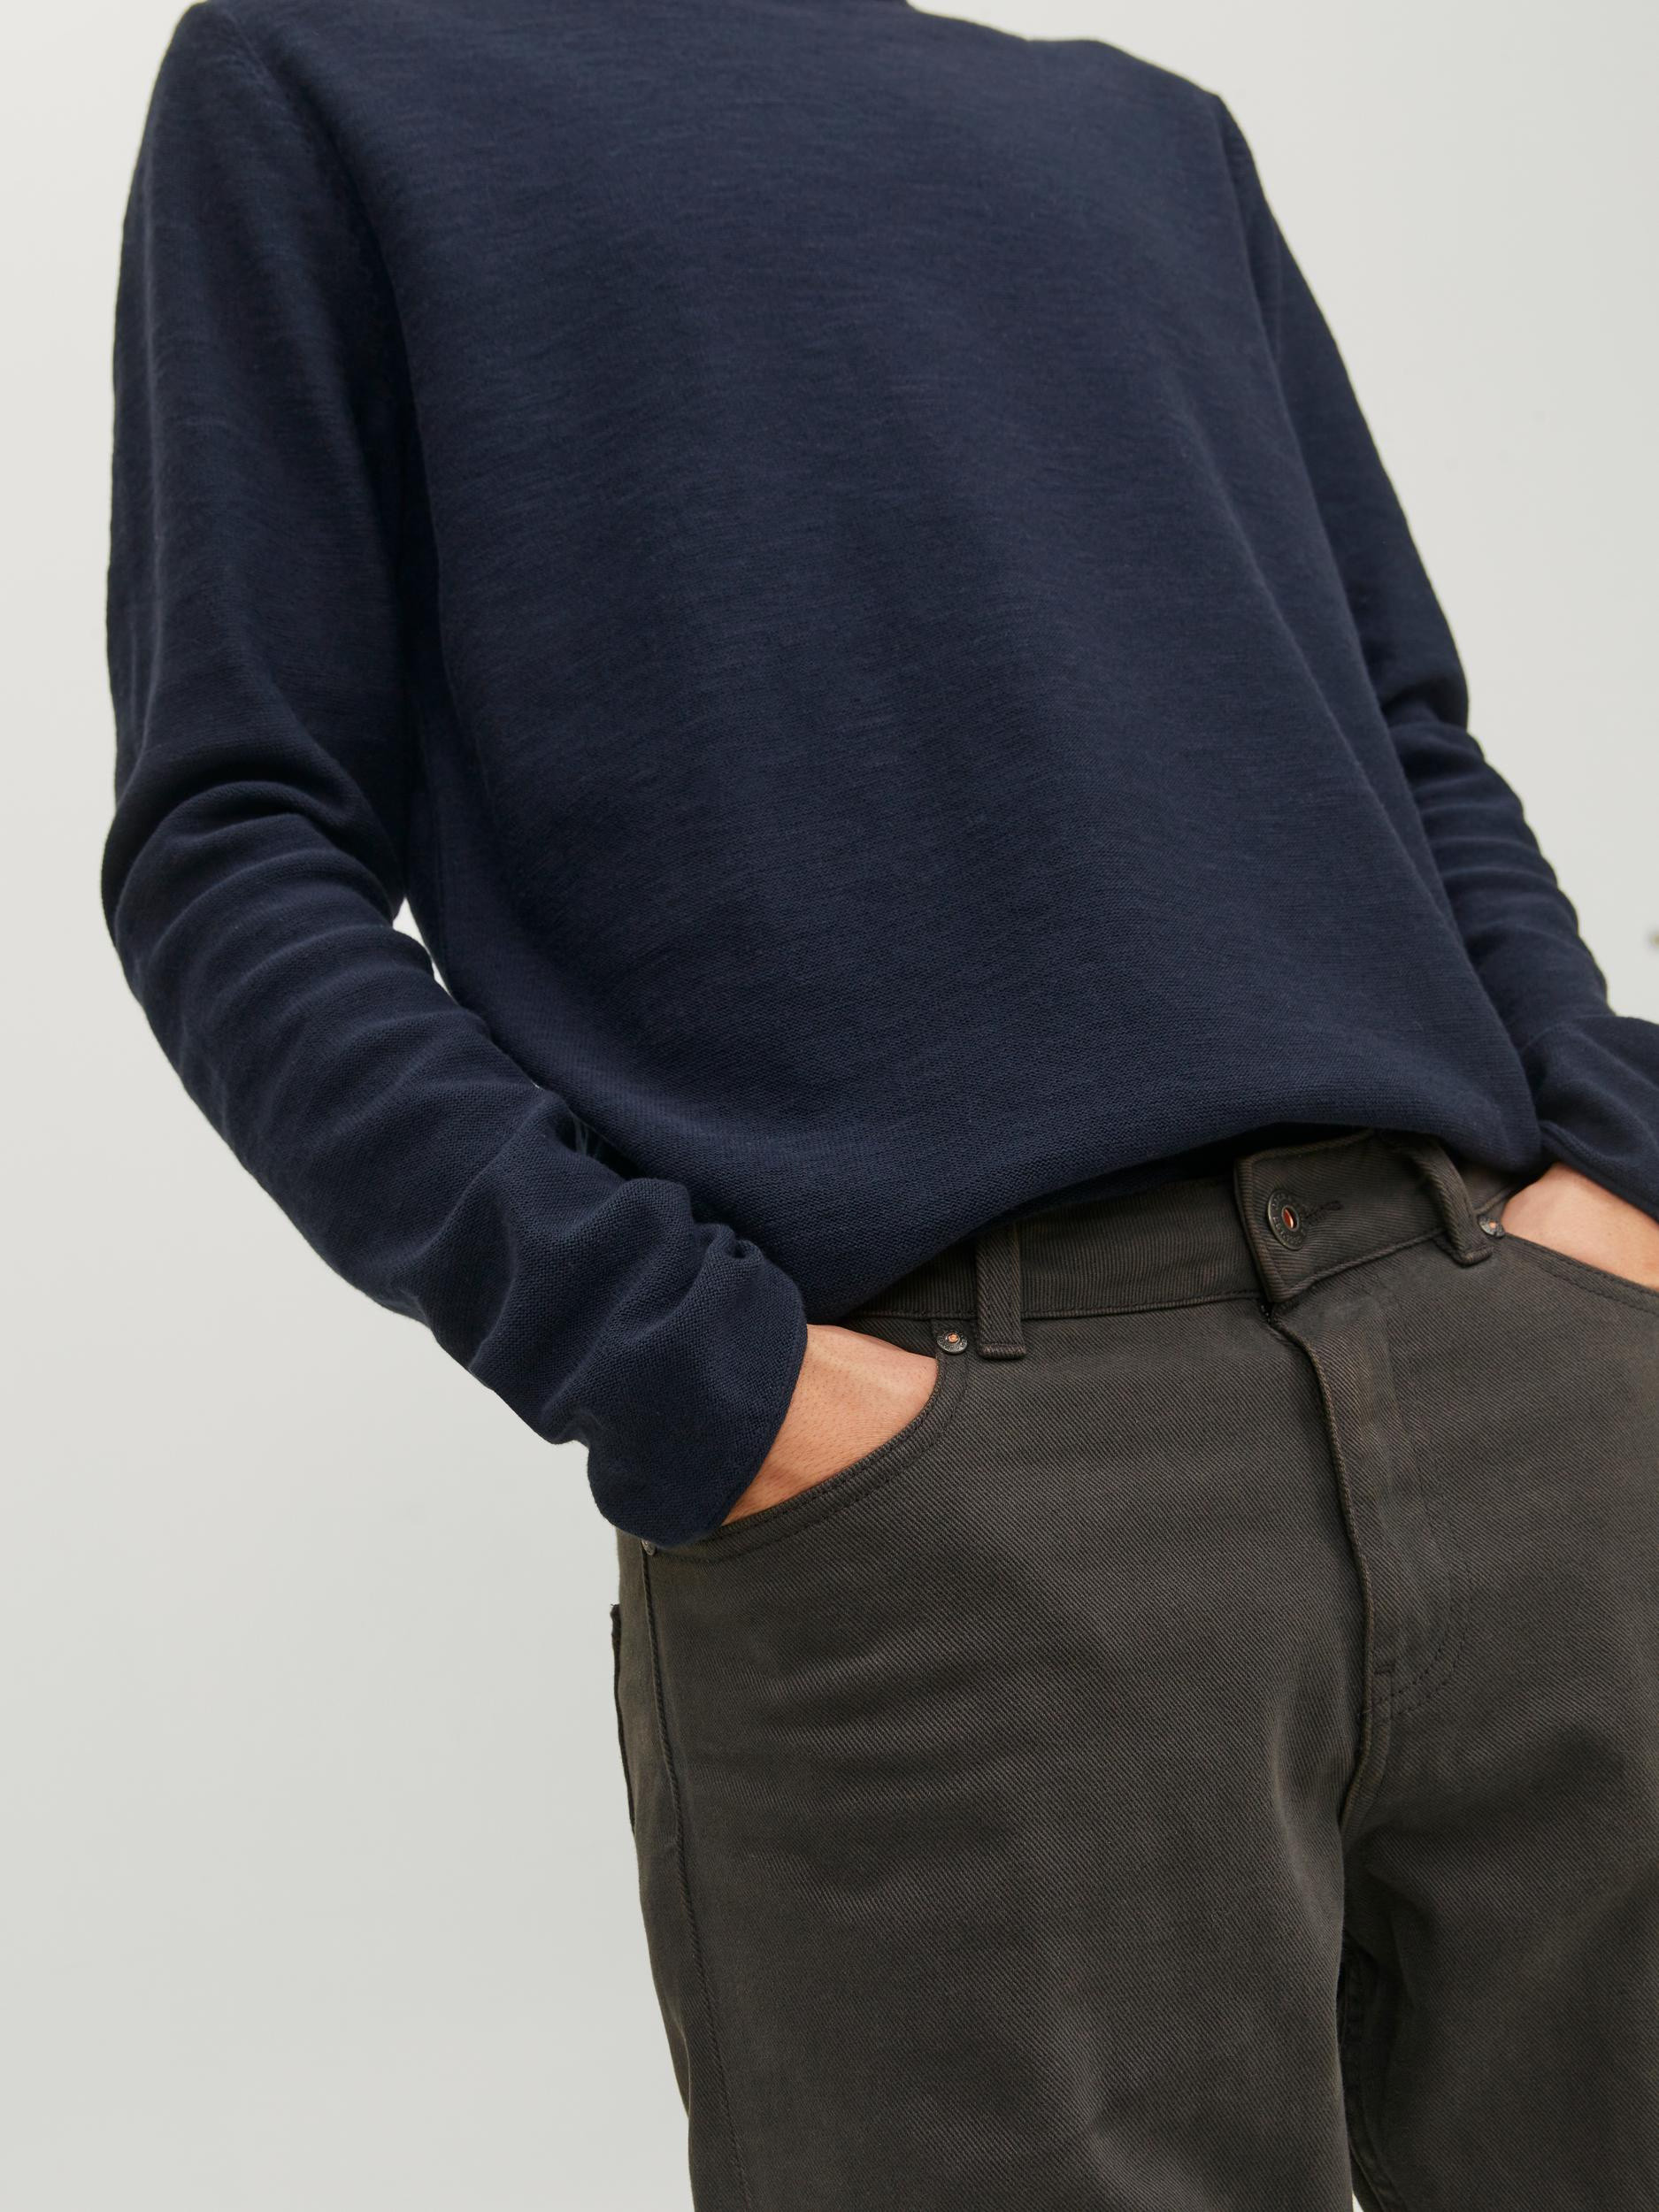 Jack & Jones - Linen blend pullover, Dark Blue, large image number 6